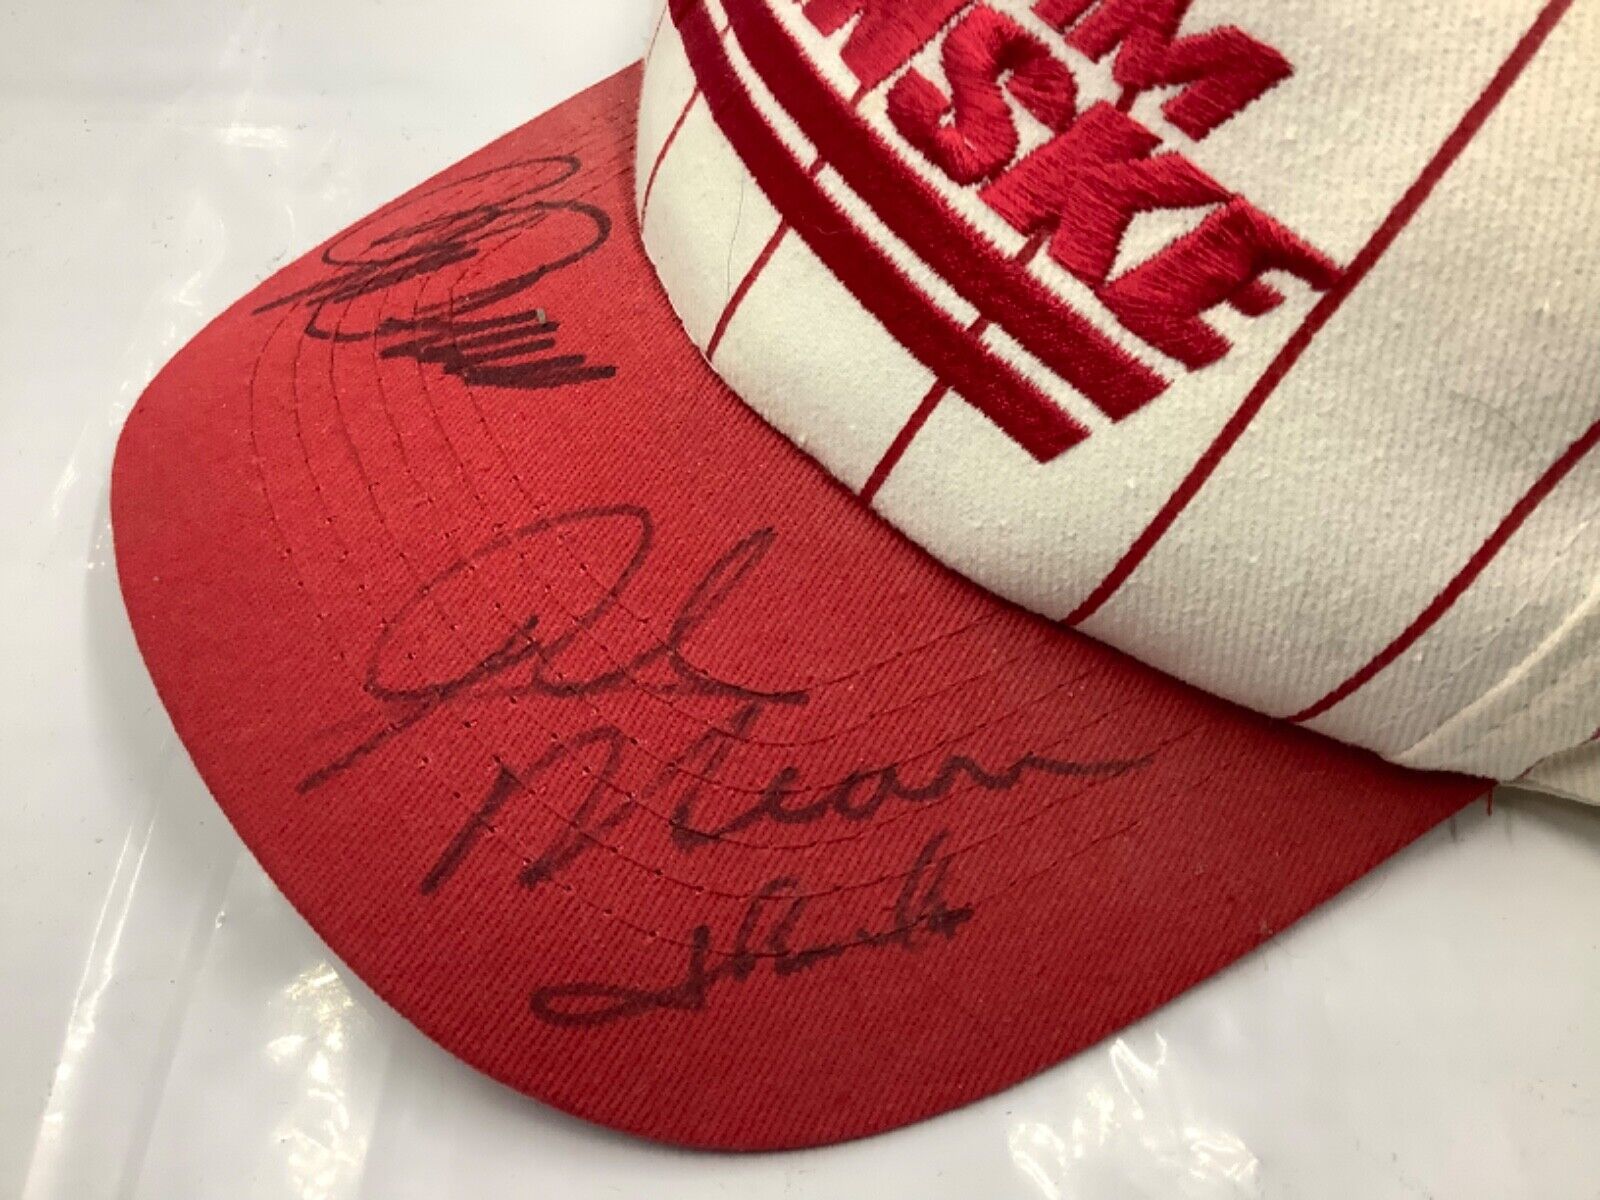 Roger Penske Rick Mears Signed Autographed Team Penske Hat